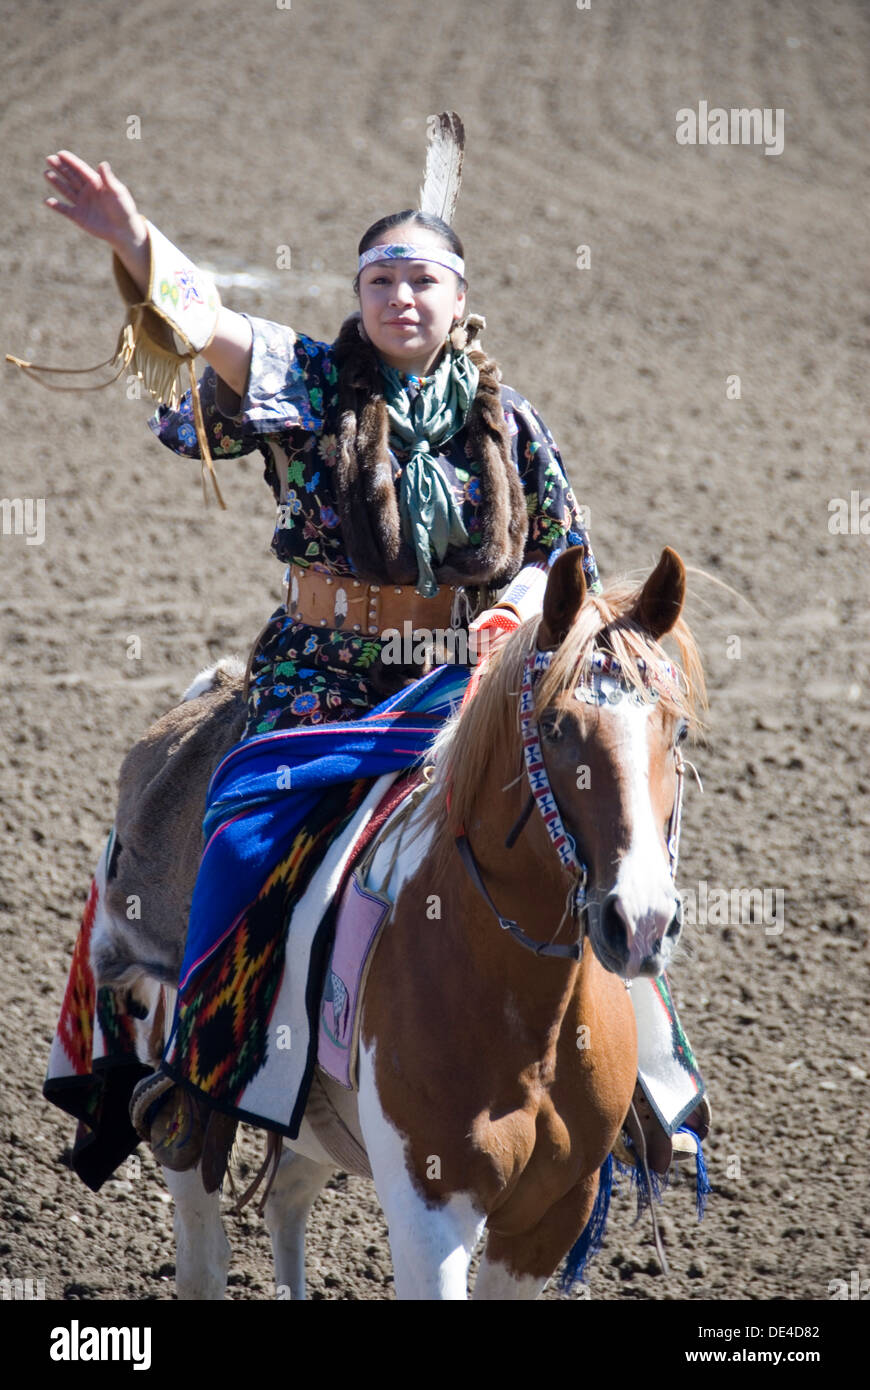 Tribeswoman indiens en costume traditionnel l'équitation, rodéo d'Ellensburg salut cérémonie d ouverture, WA USA 2012 Banque D'Images